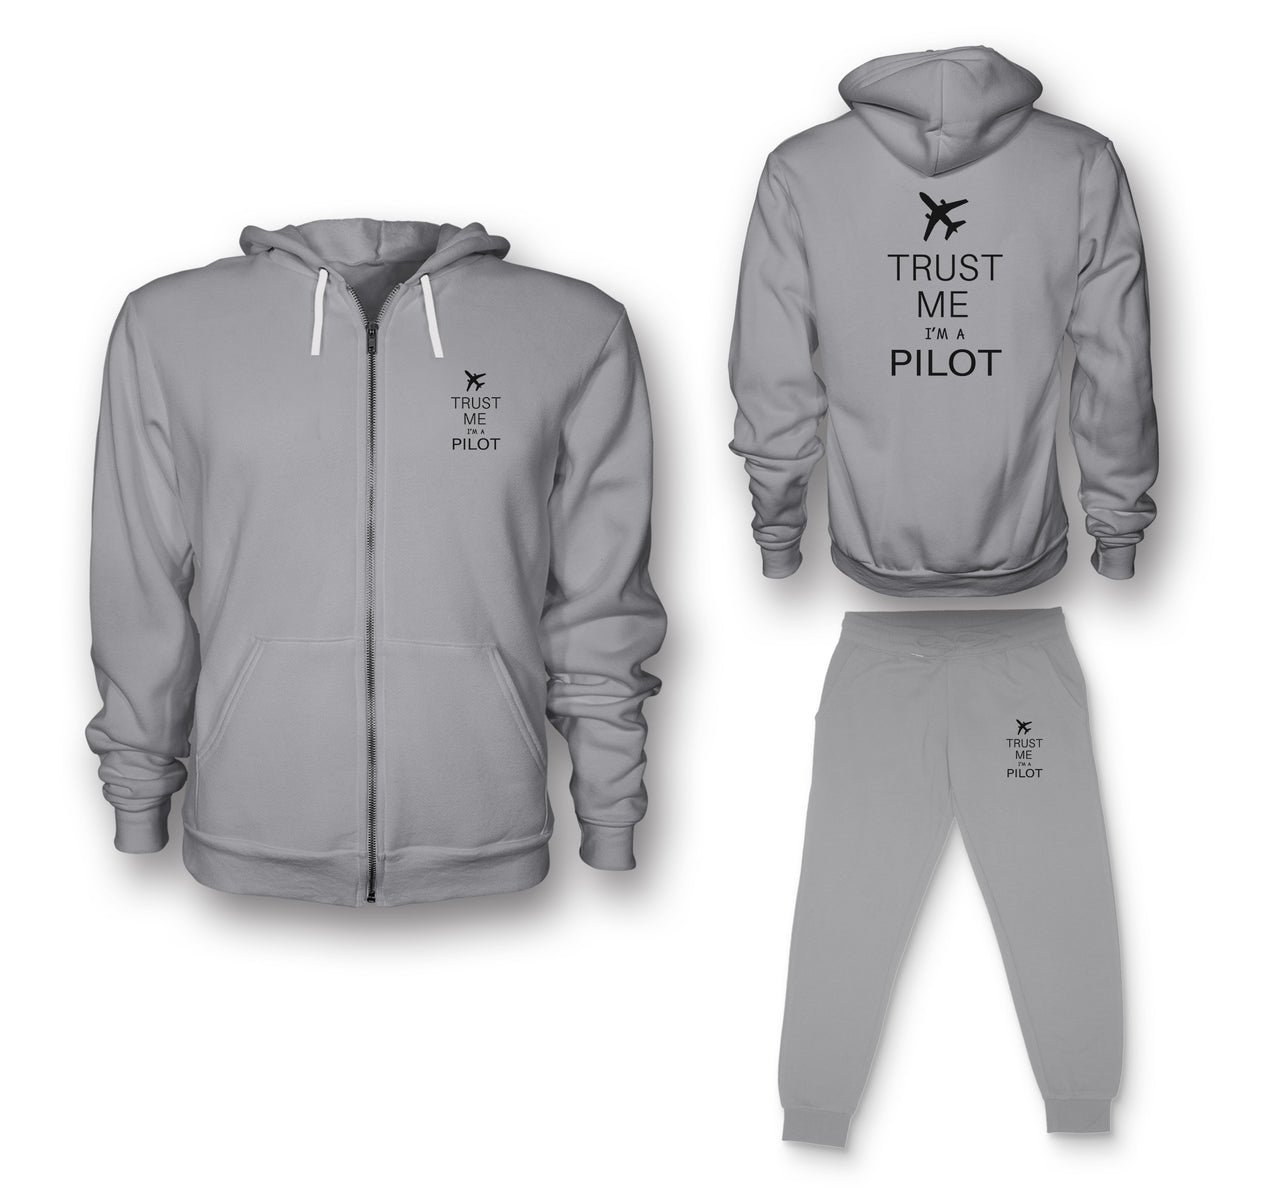 Trust Me I'm a Pilot 2 Designed Zipped Hoodies & Sweatpants Set